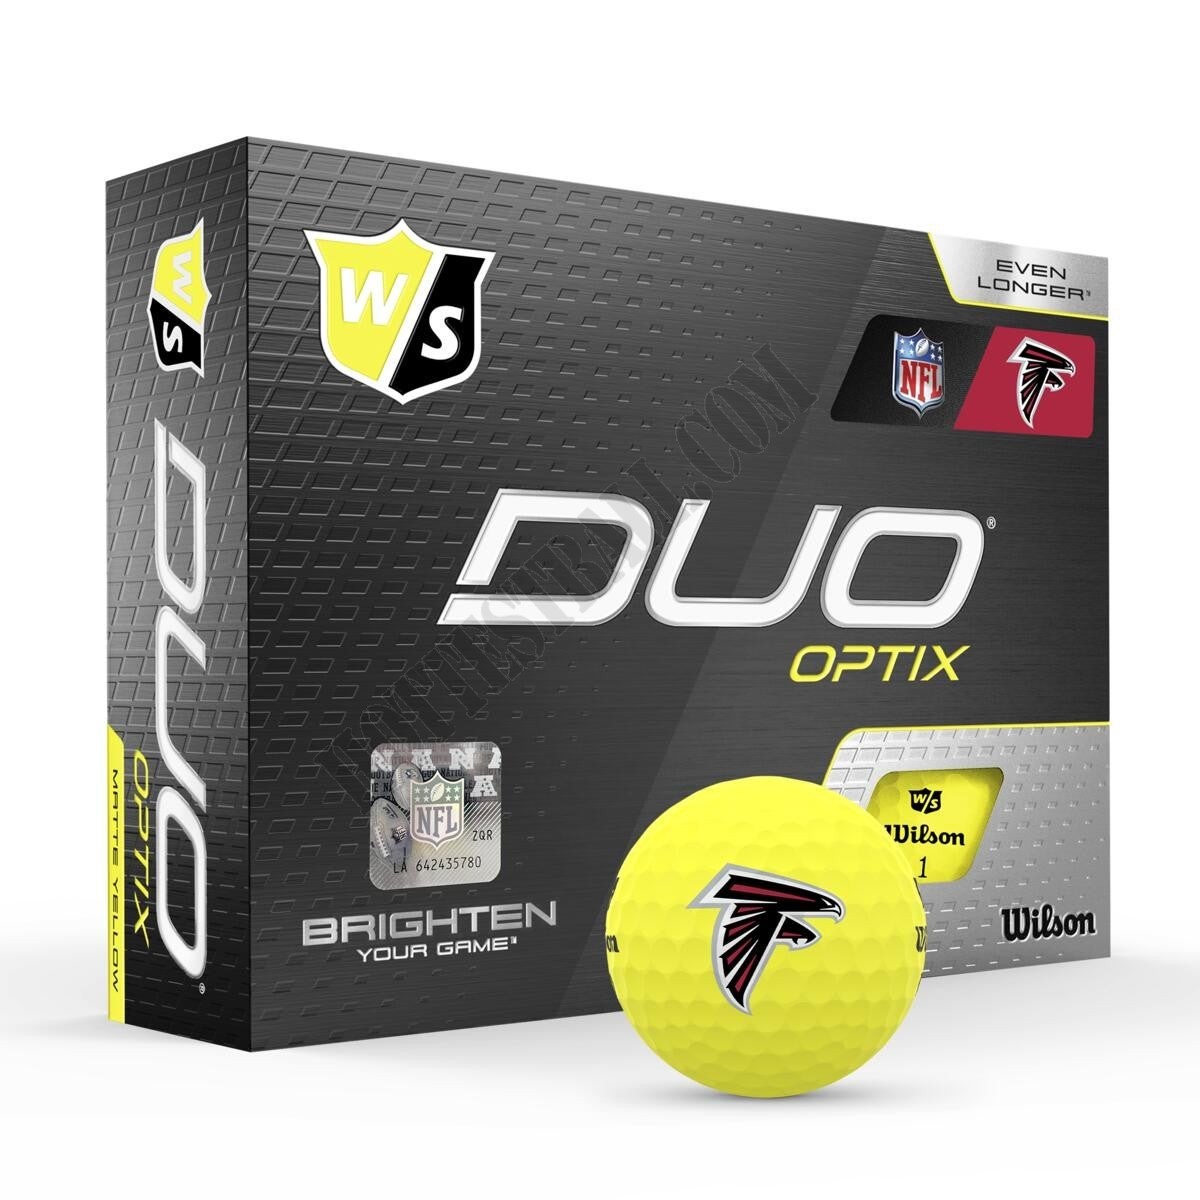 Duo Optix NFL Golf Balls - Atlanta Falcons ● Wilson Promotions - Duo Optix NFL Golf Balls - Atlanta Falcons ● Wilson Promotions